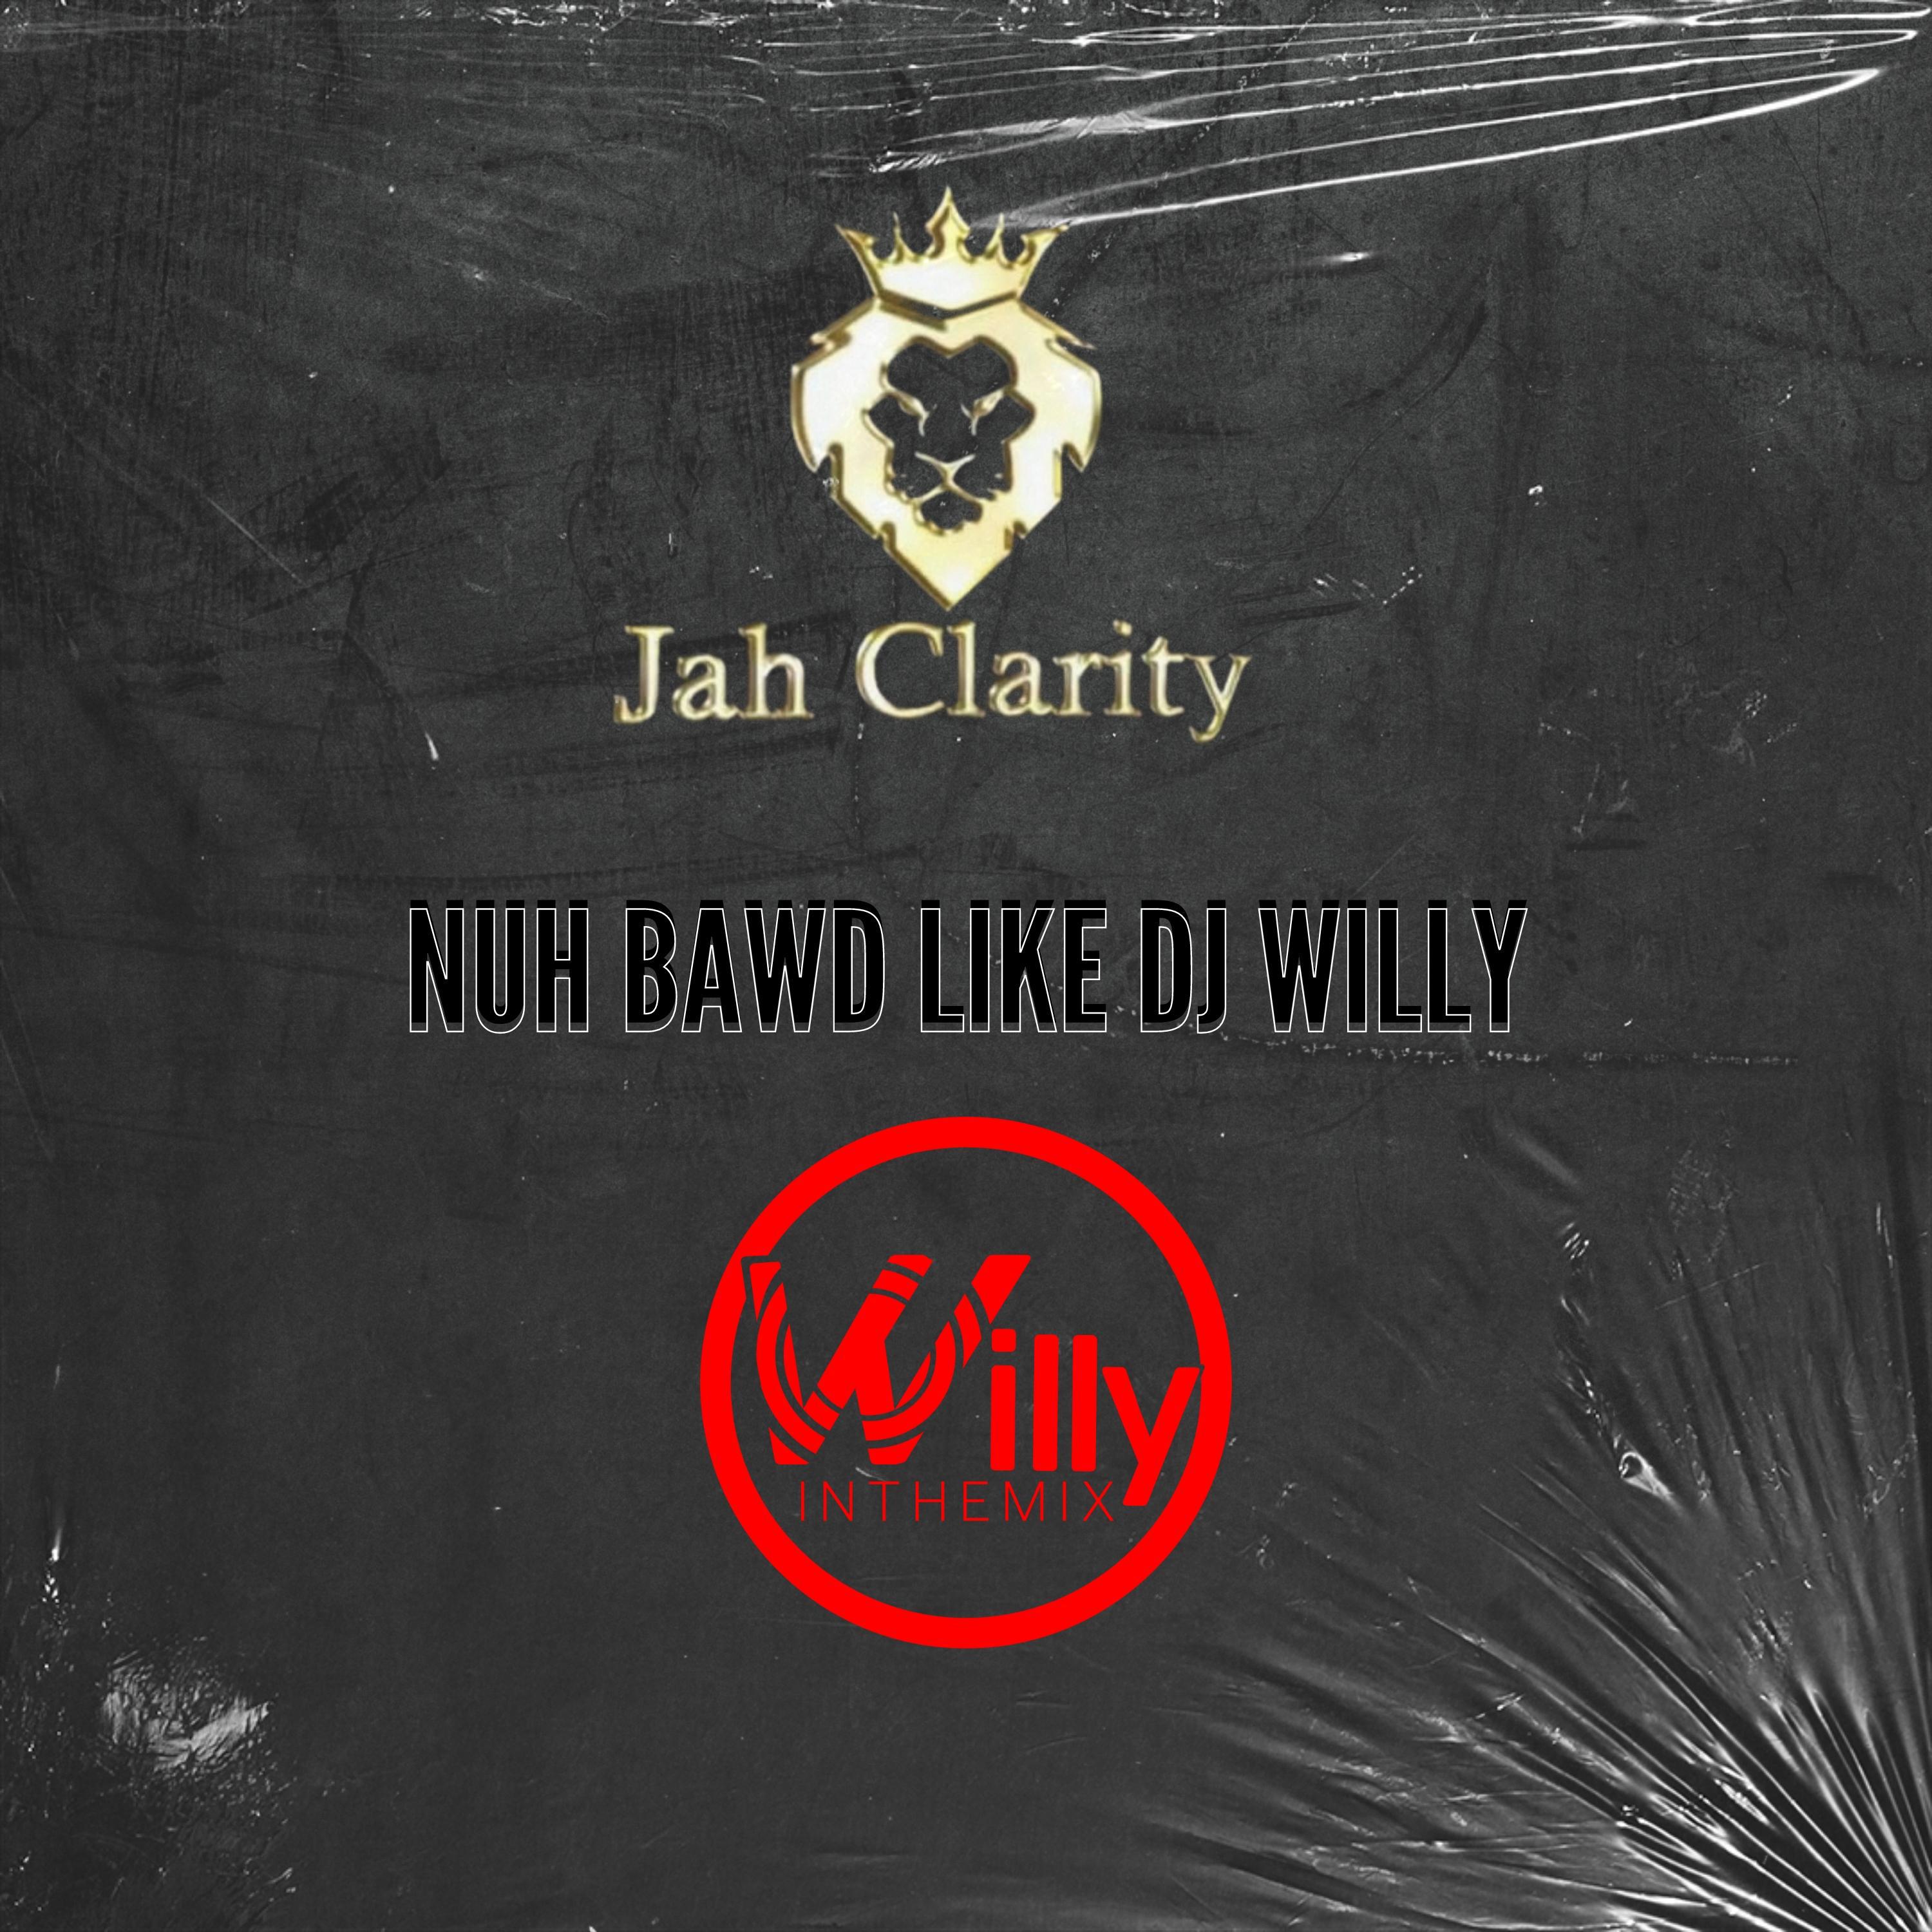 DjWillyintheMix - Nuh Bawd Like Dj Willy (feat. Jah Clarity)